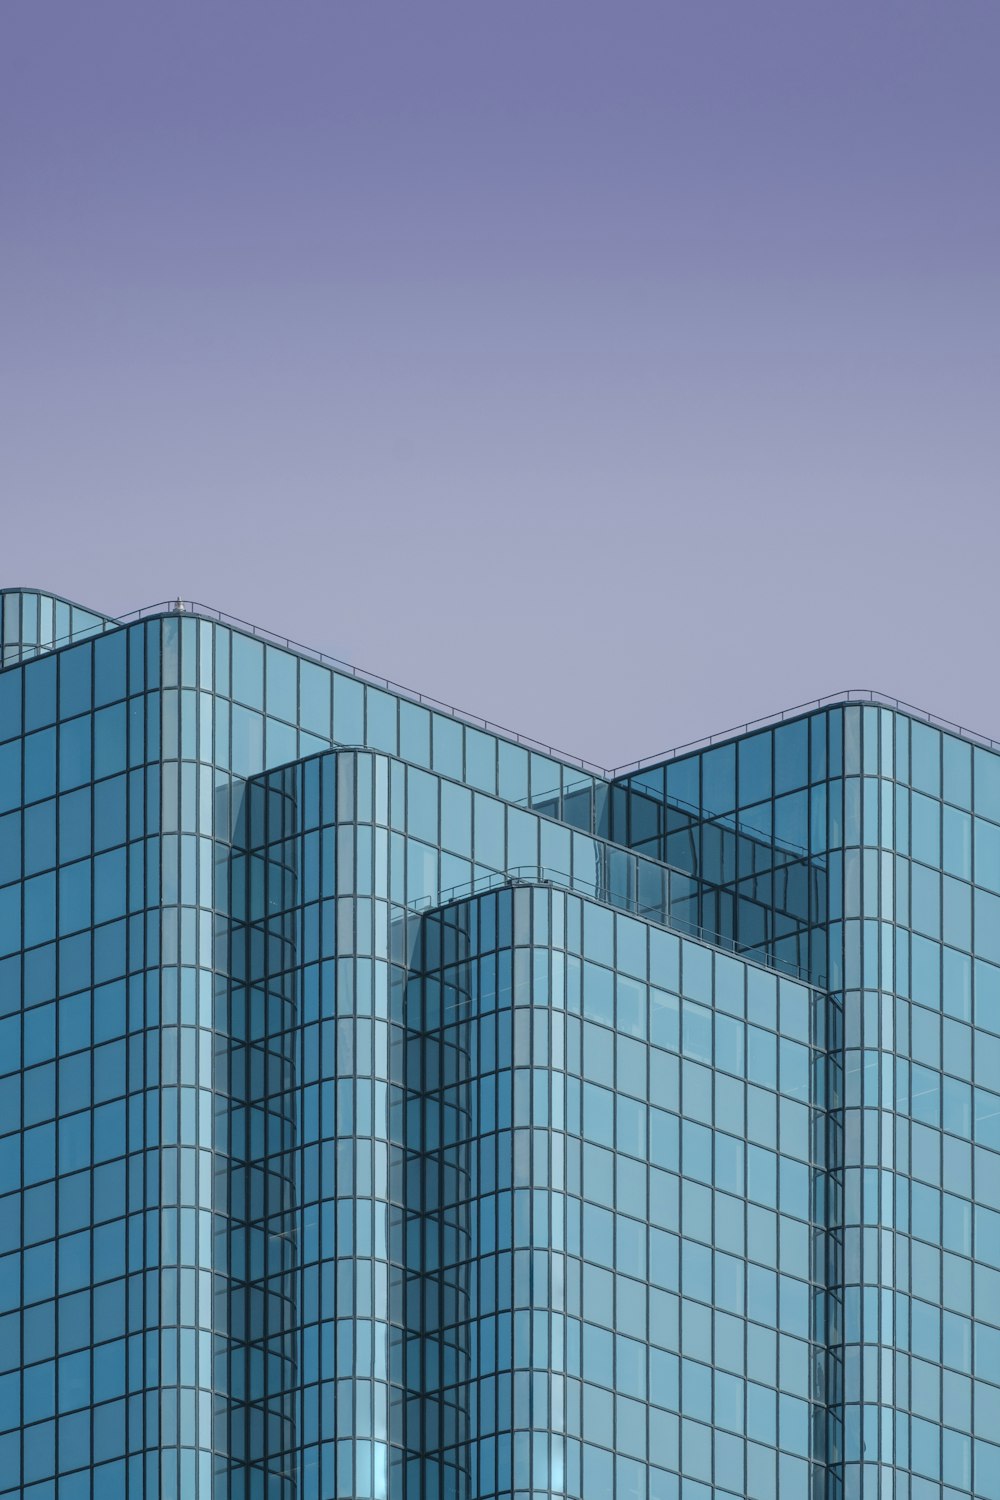 Edificio de hormigón gris bajo el cielo azul durante el día